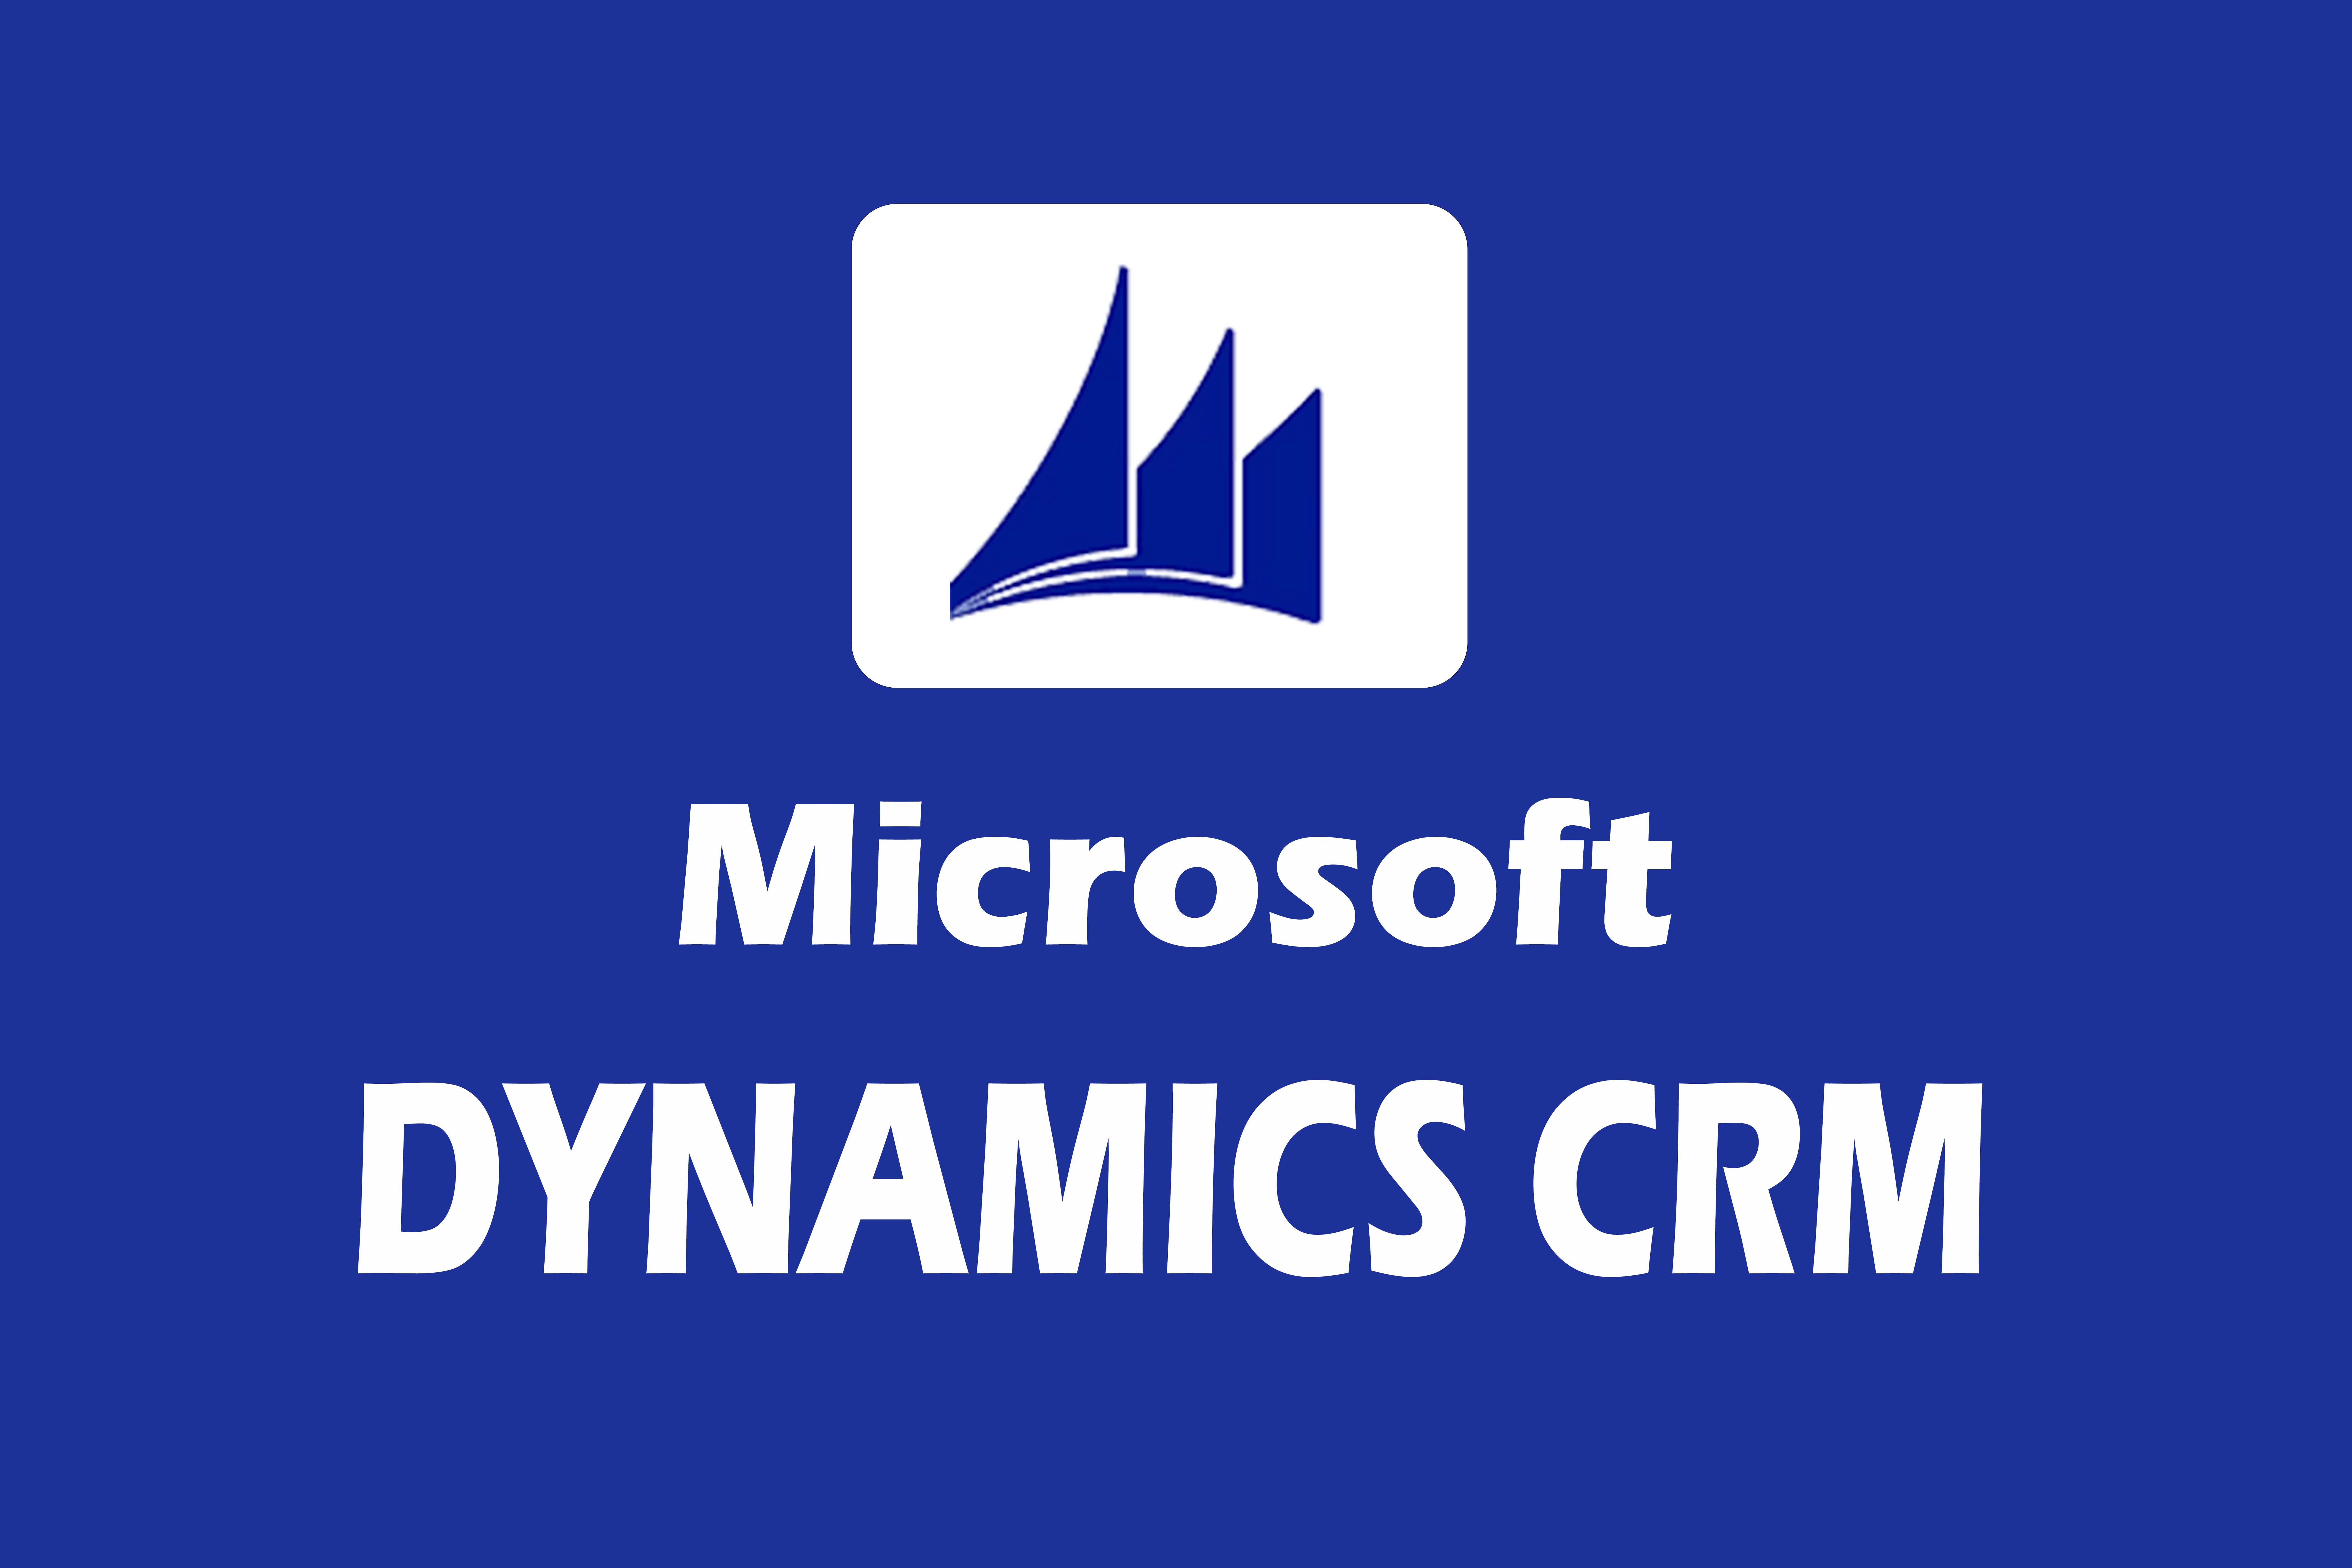 Microsoft Dymanics CRM training in hyderabad